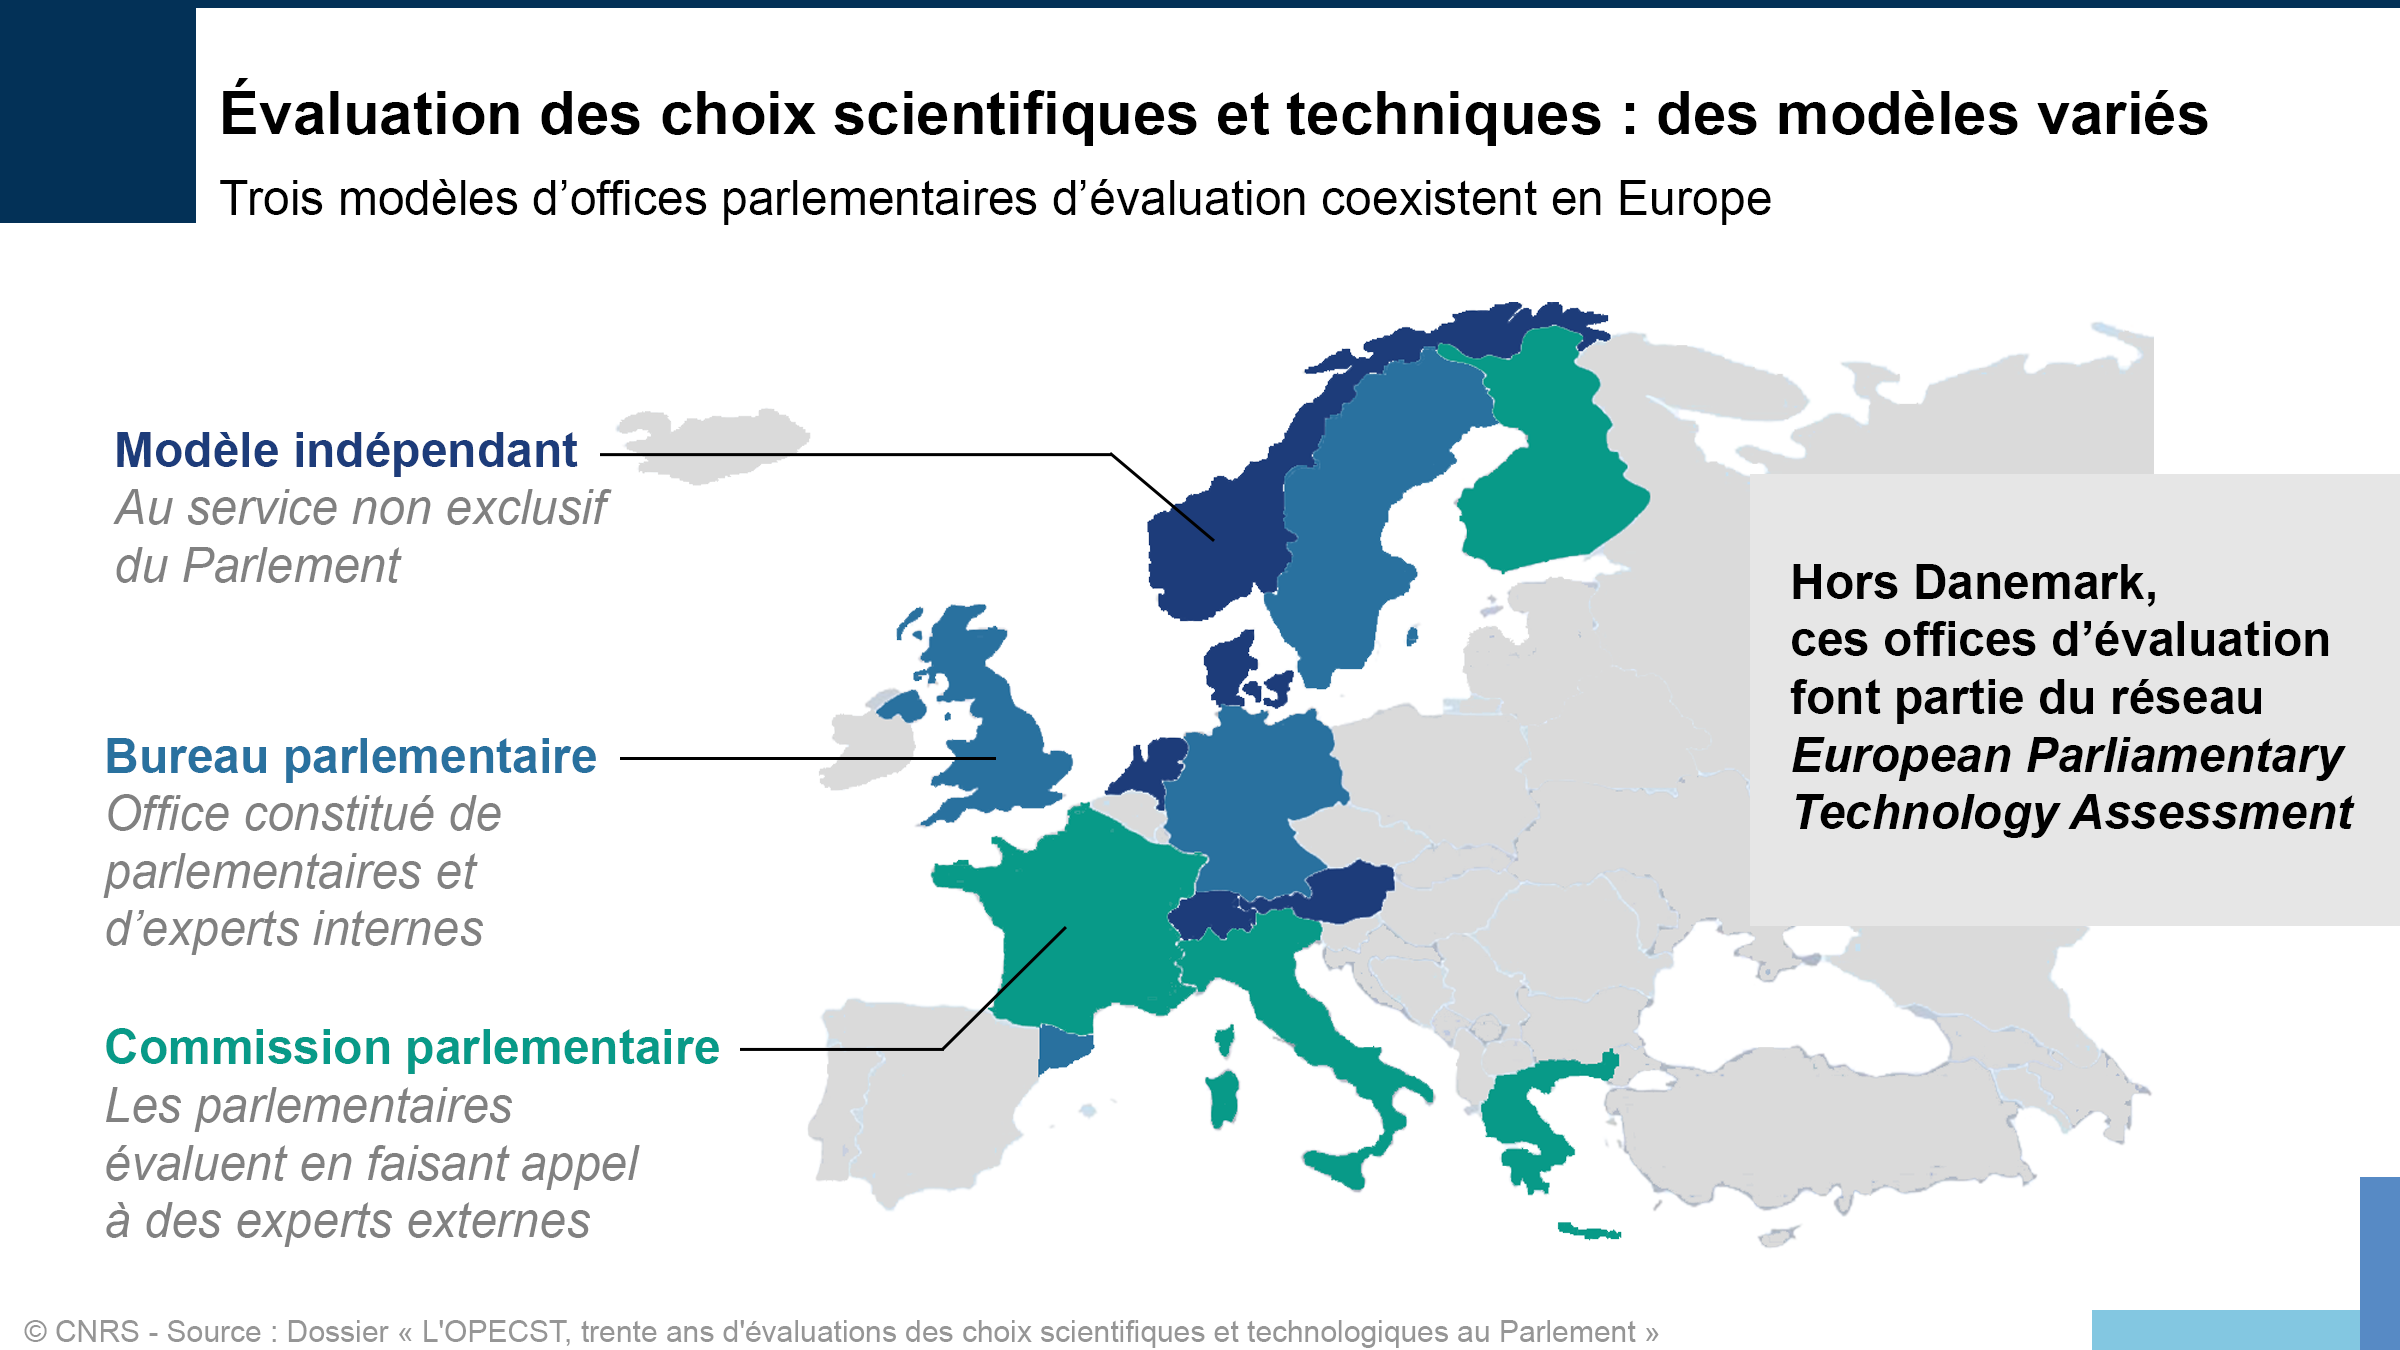 Carte d'Europe indiquant les 3 types d'Office parlementaire d'évaluation des choix scientifiques et techniques